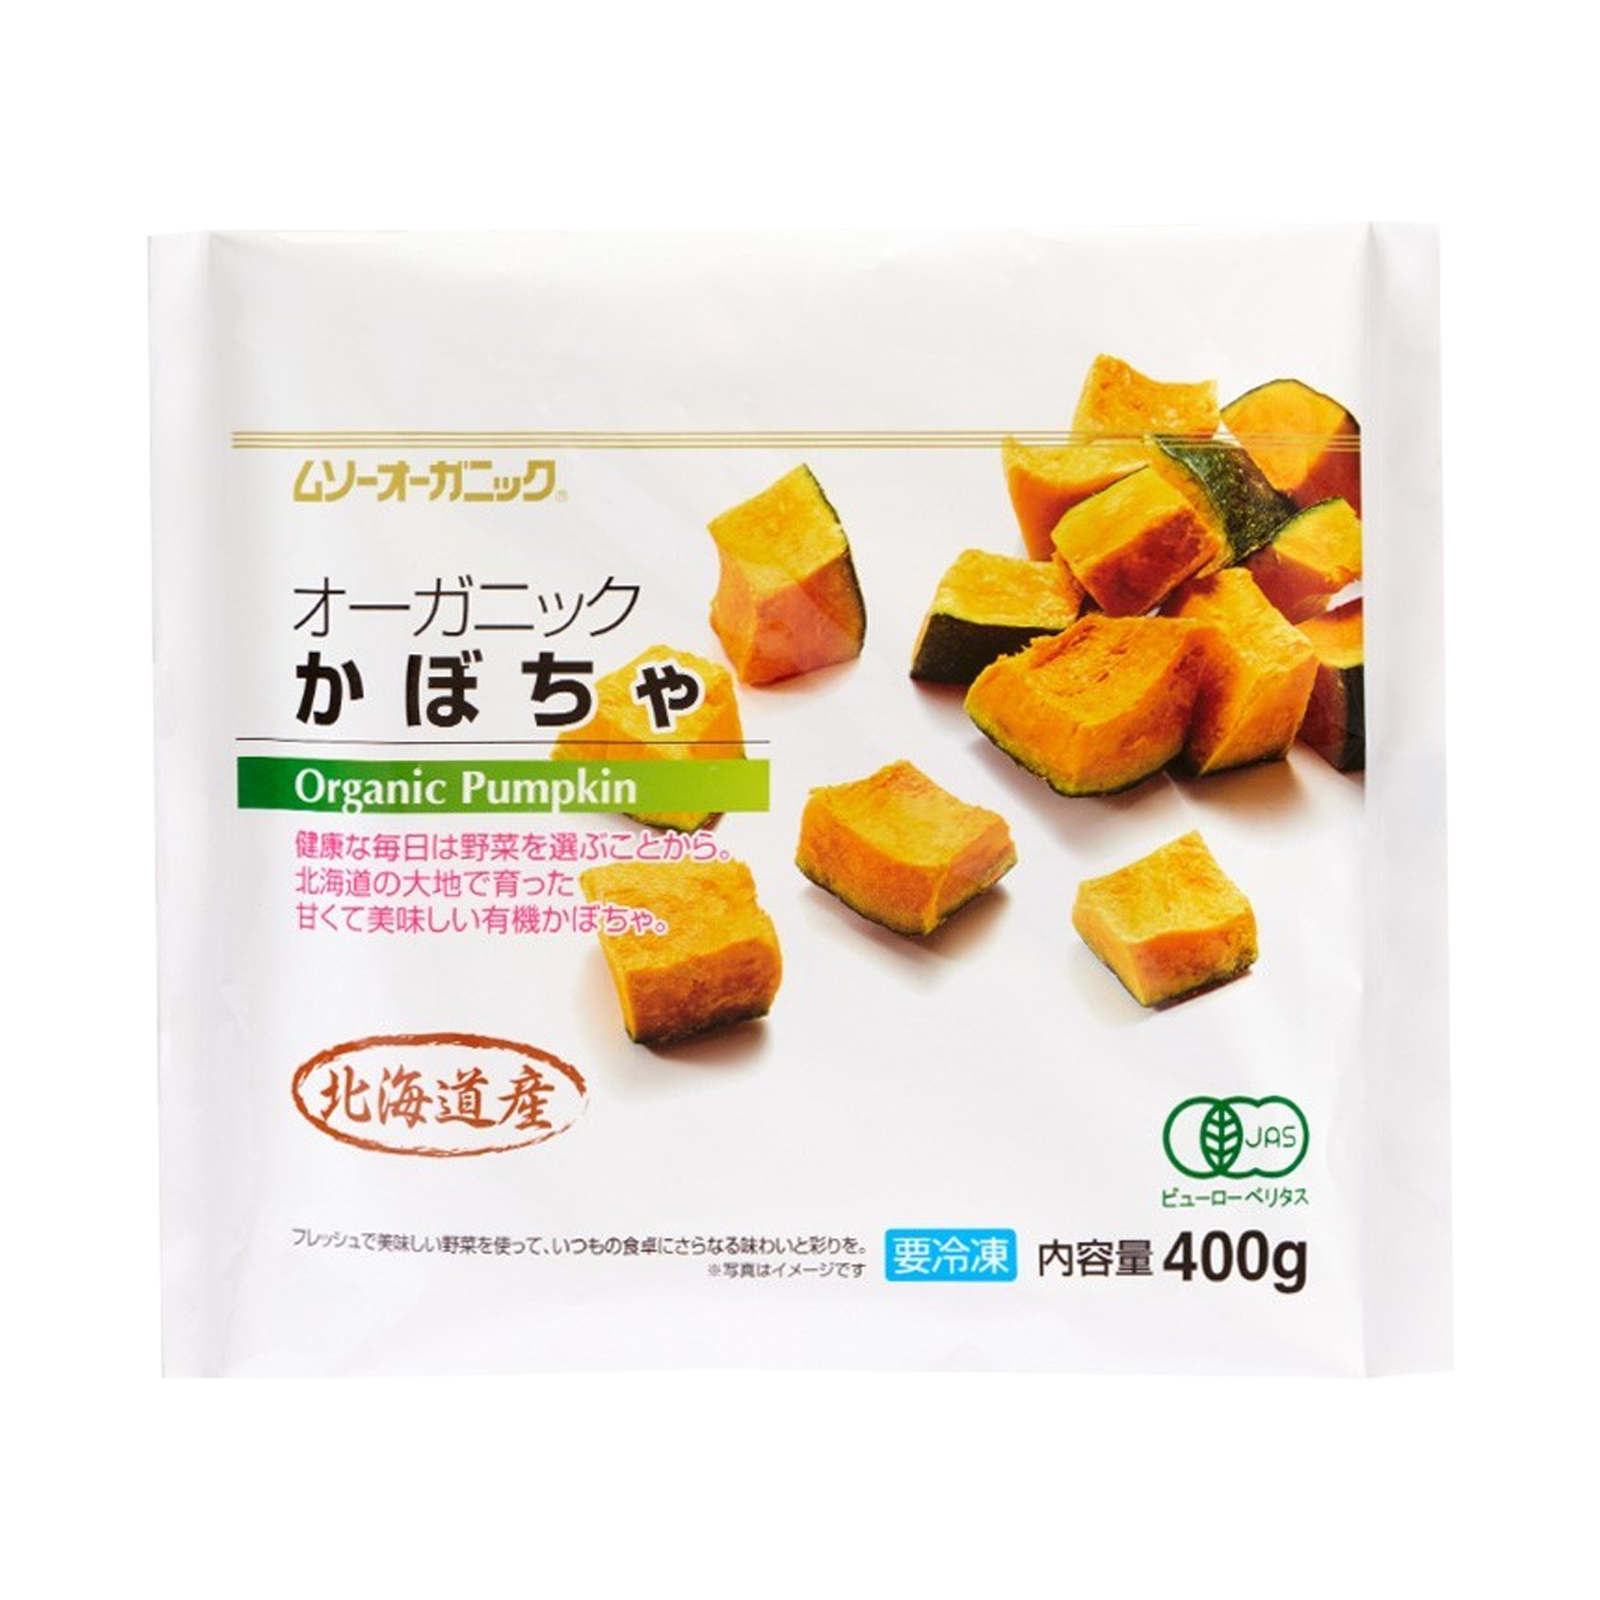 Certified Organic Japanese Pumpkin Cuts from Hokkaido (1.2kg) - Horizon Farms